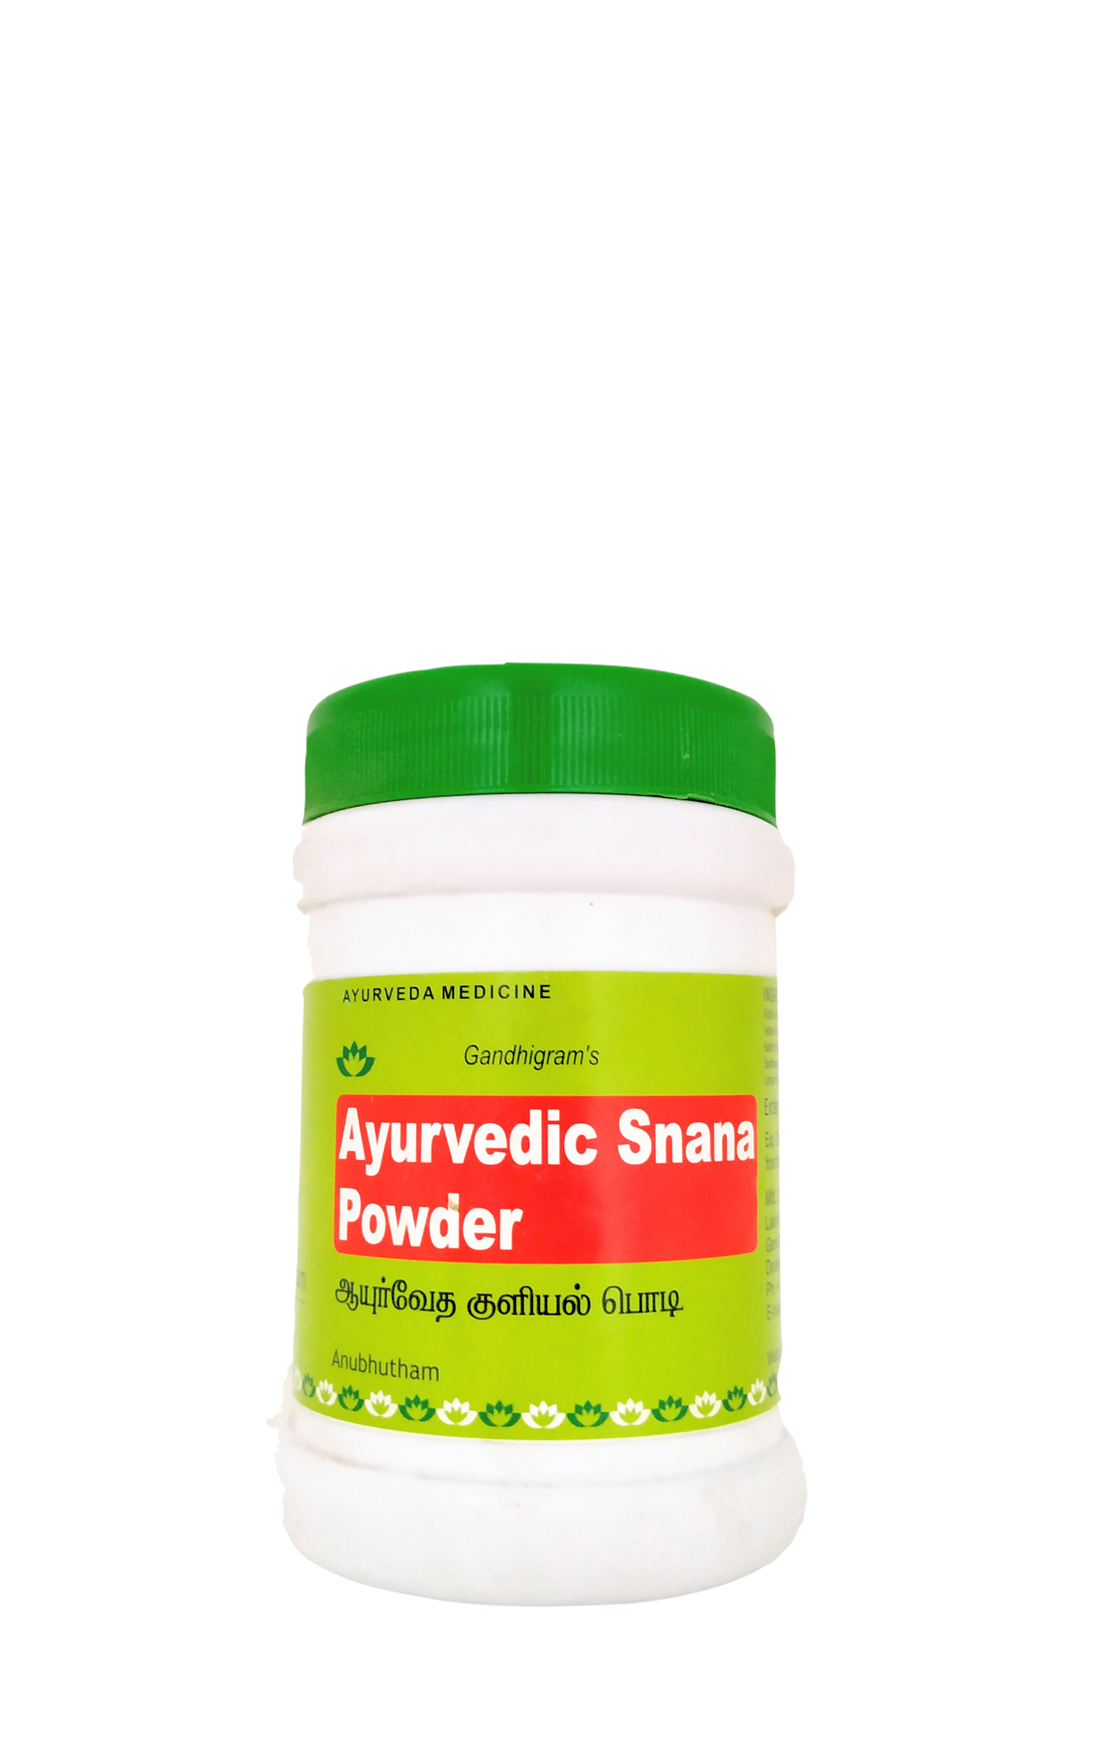 Shop Ayurvedic snana powder 100gm (bath powder) at price 95.00 from Lakshmi Seva Sangham Online - Ayush Care